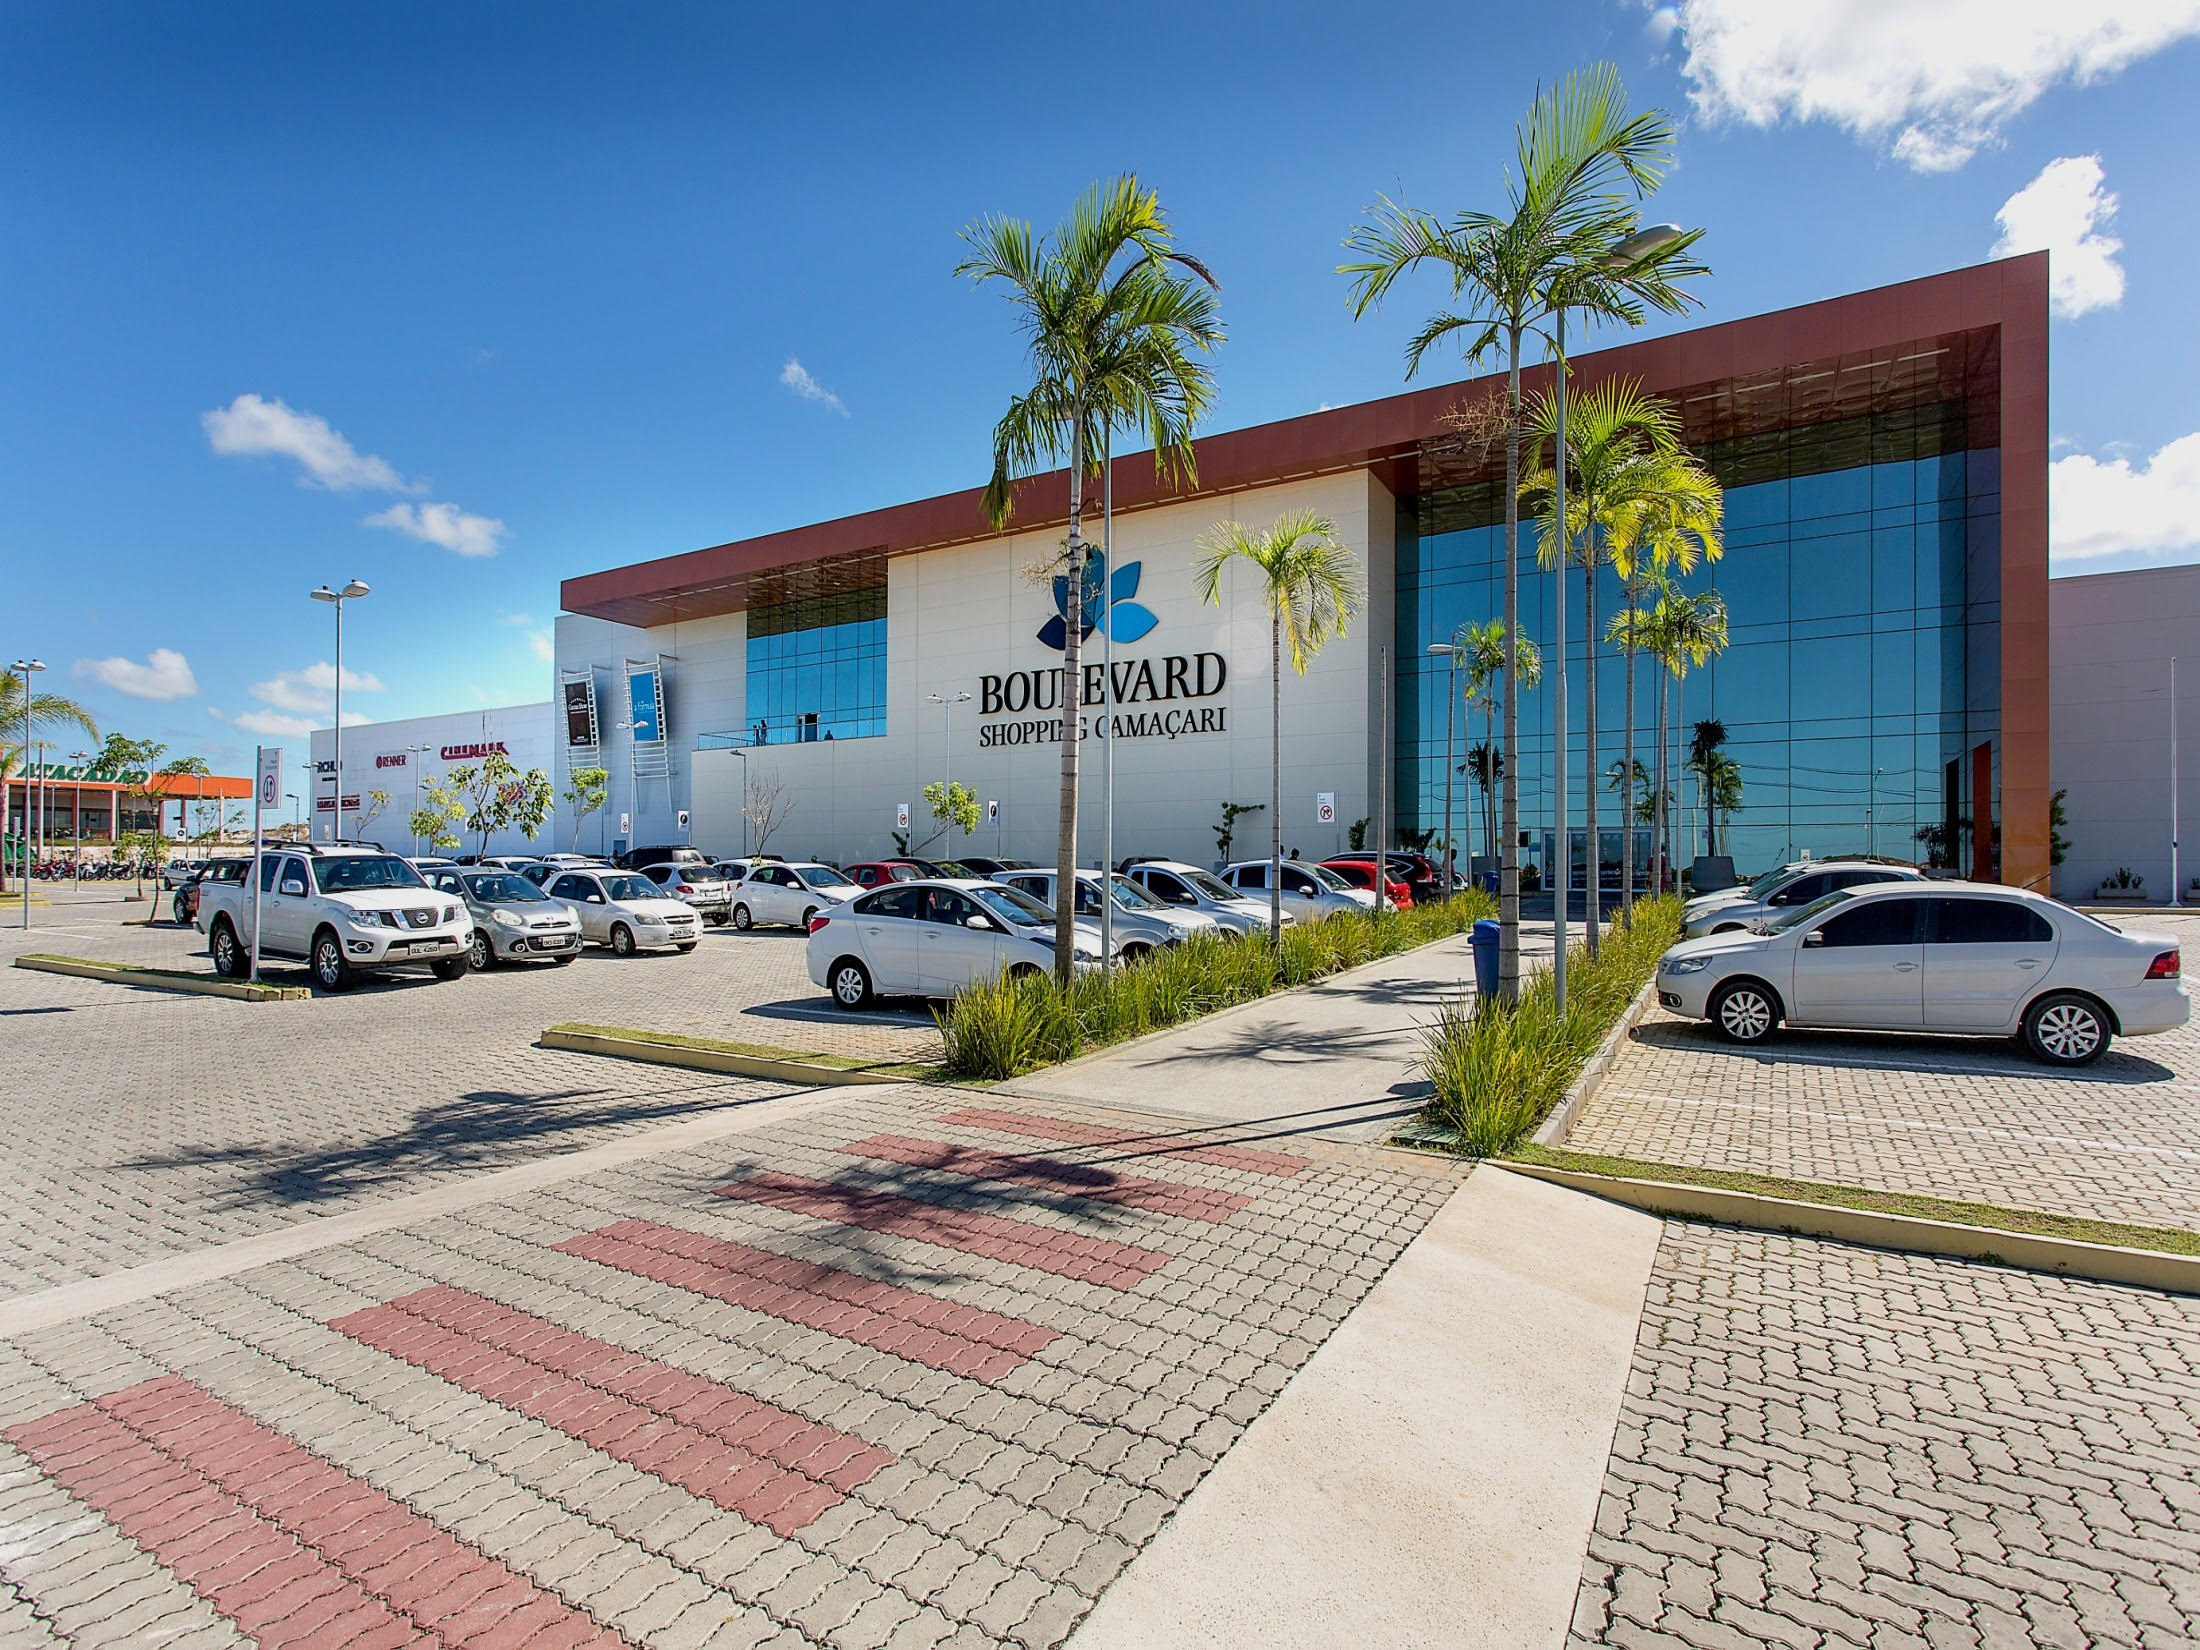 Lojistas do Boulevard Shopping Camaçari oferecem descontos de até 50% no Liquida Bahia 2020